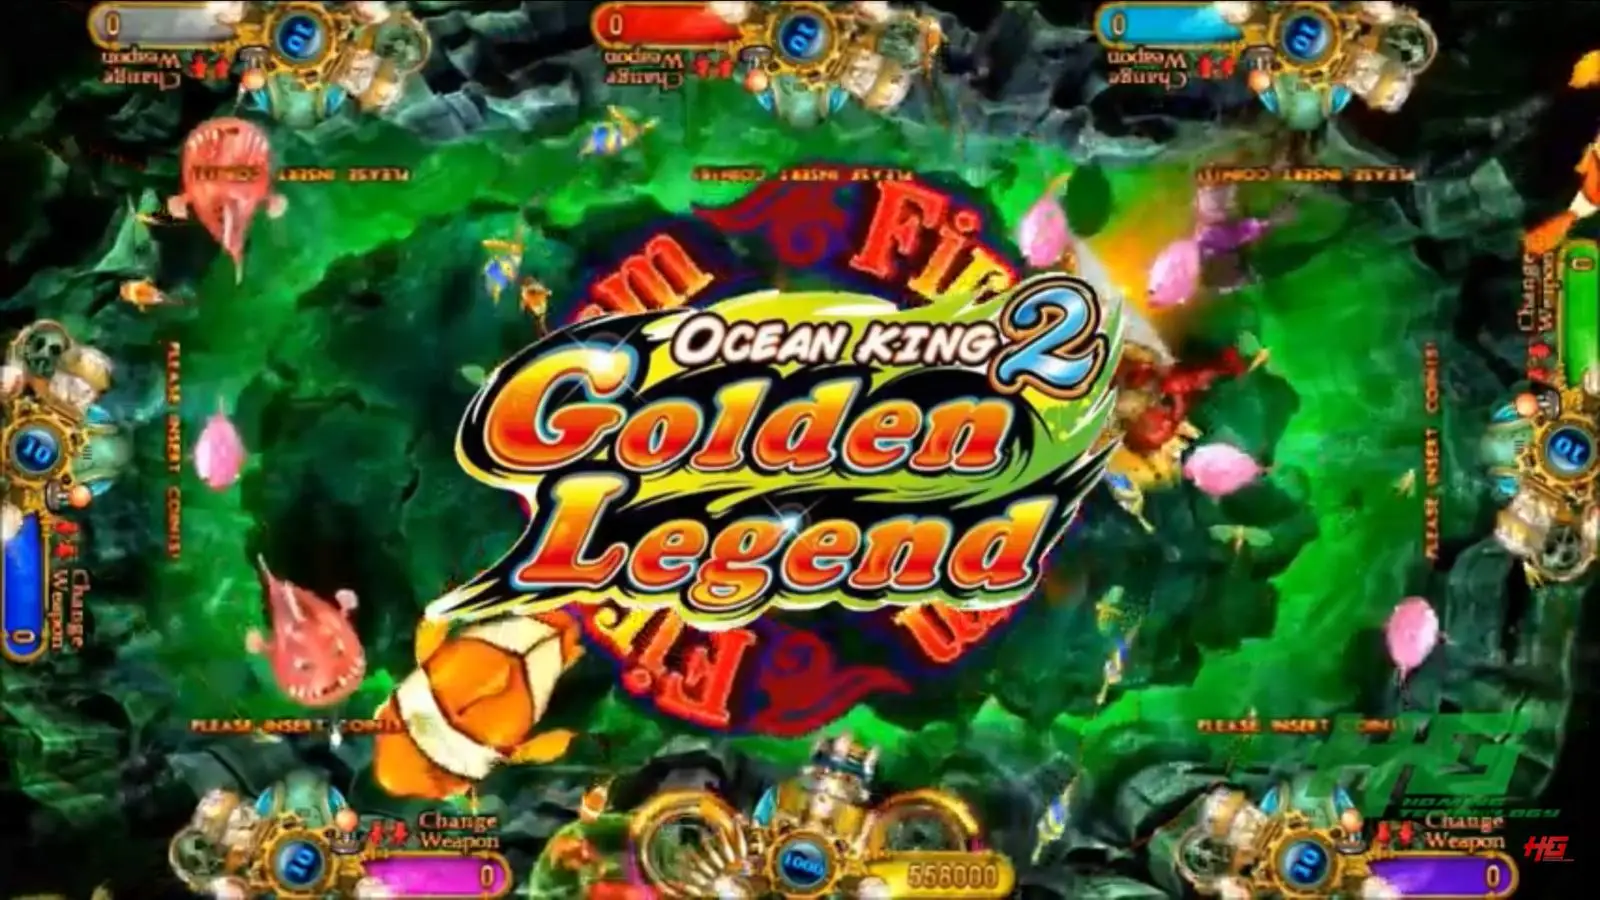 ocean king 2 golden legend specs